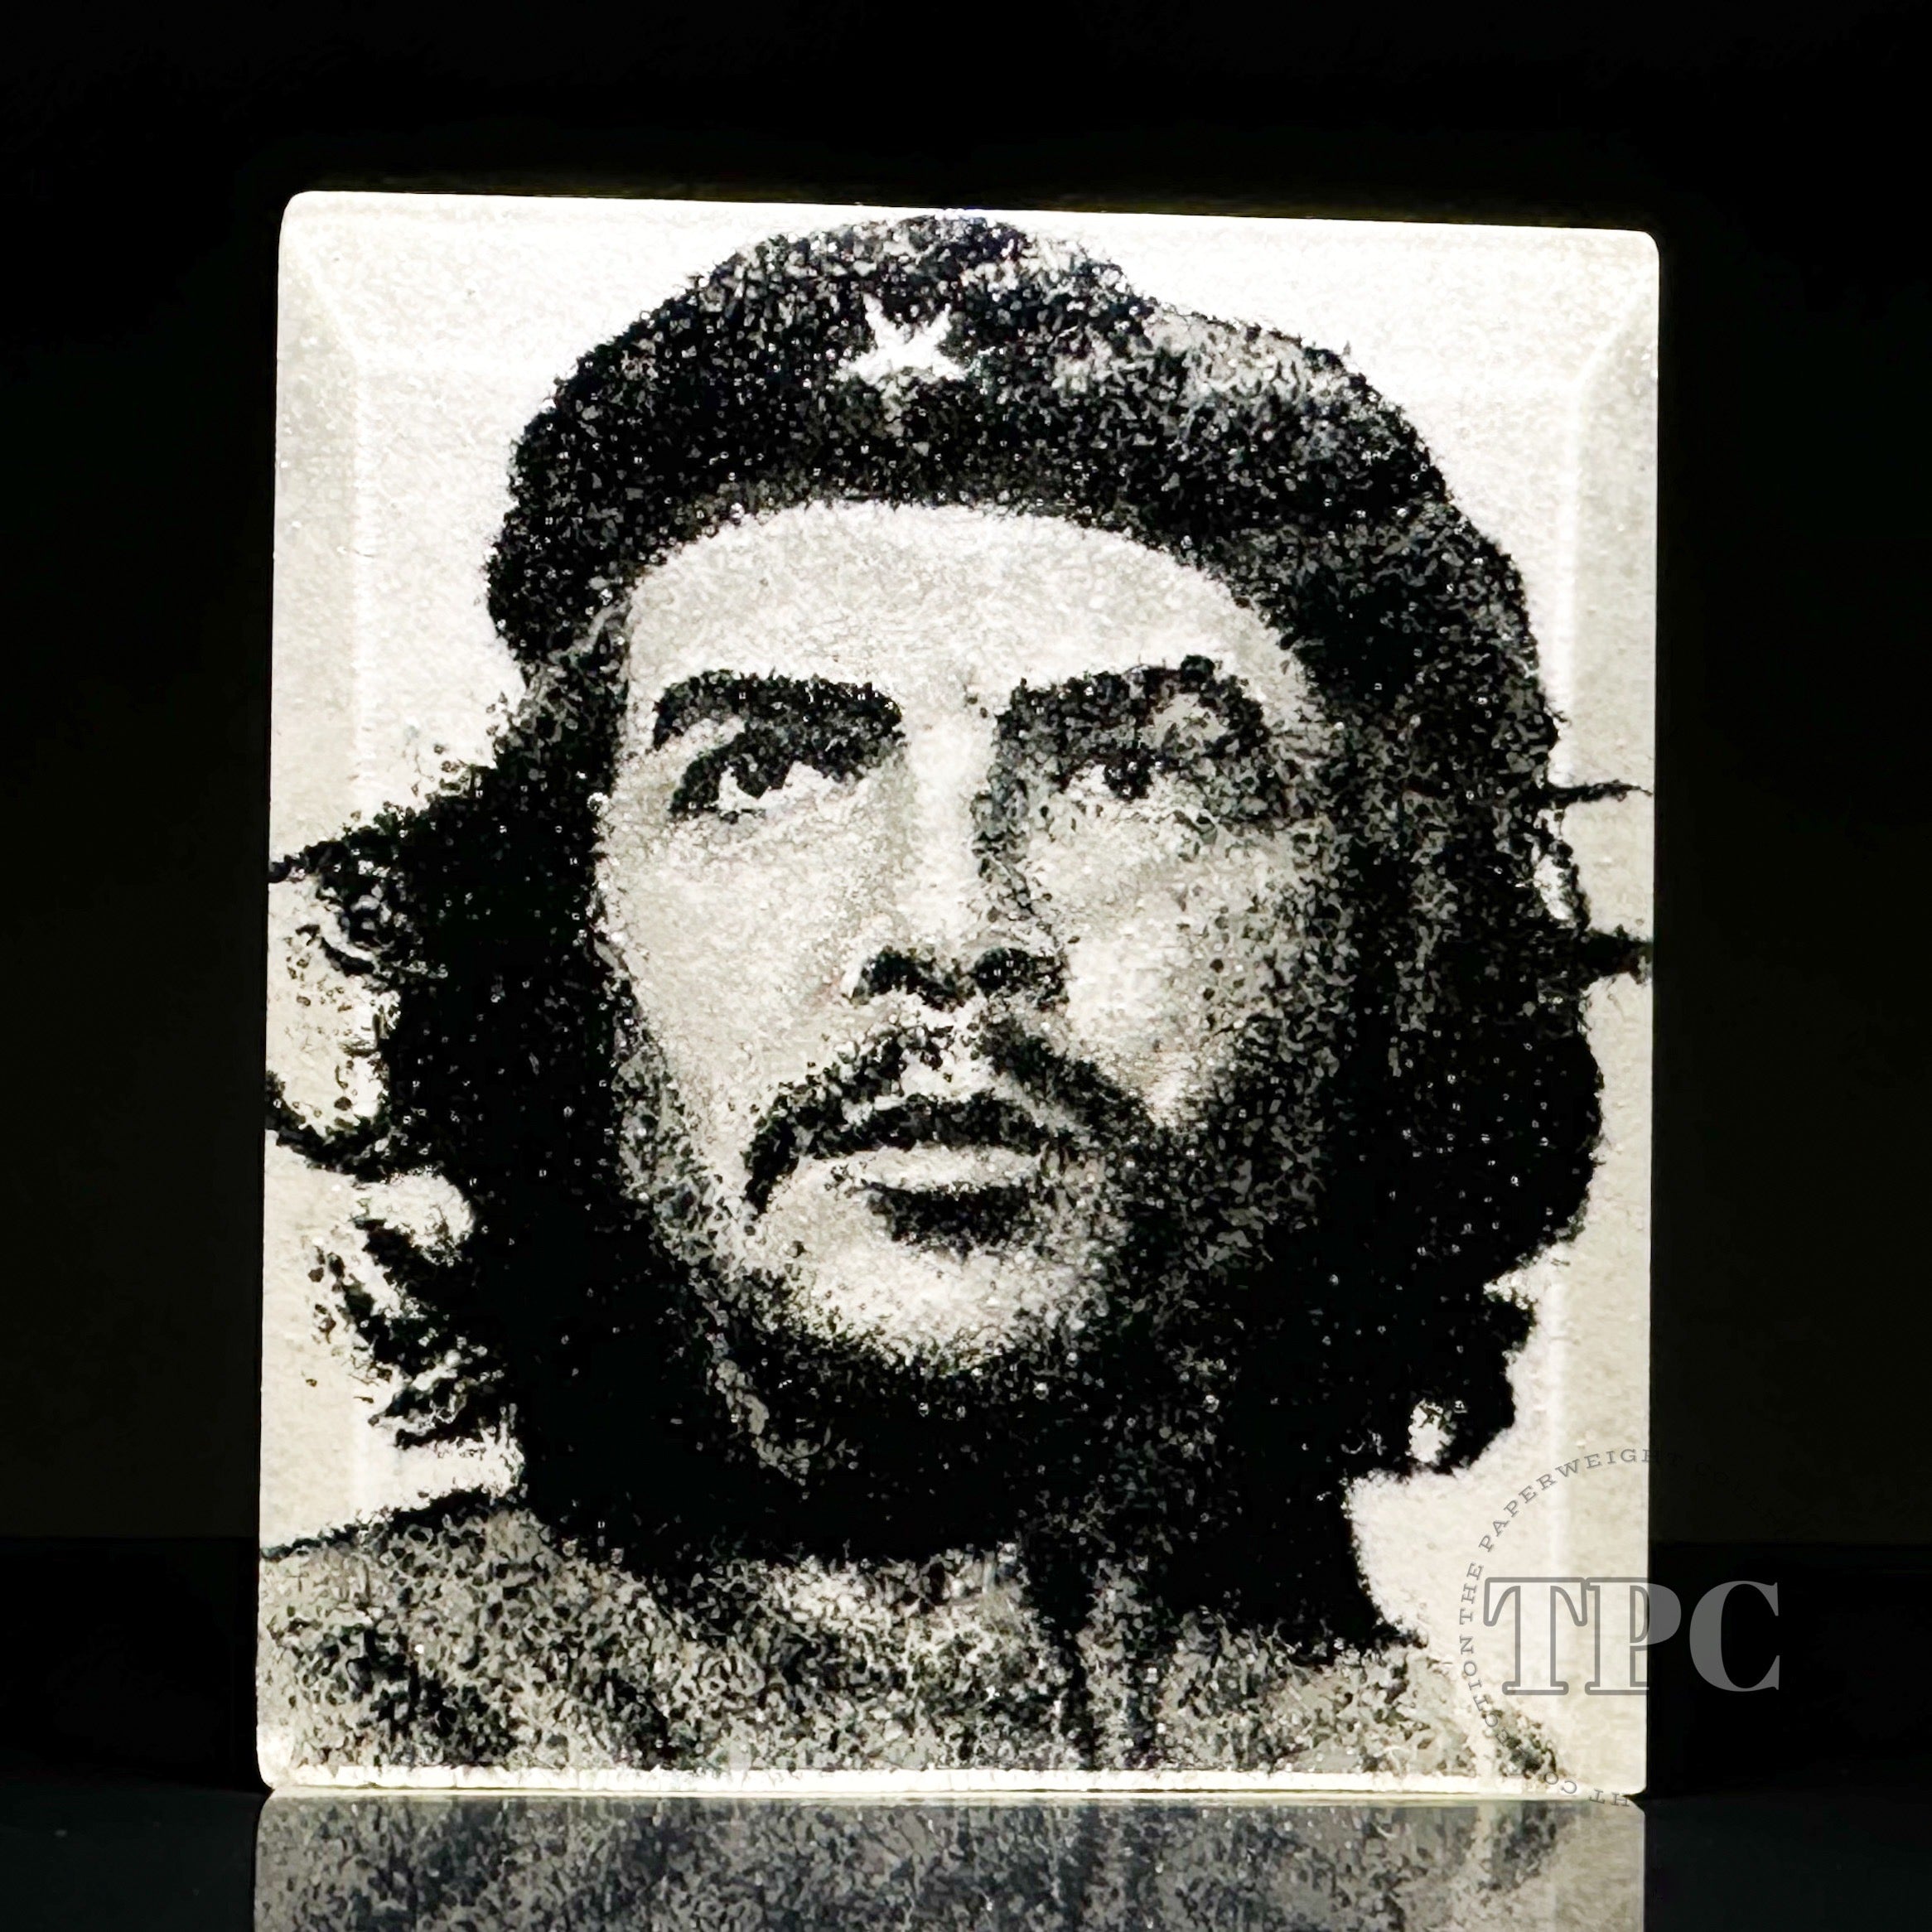 Ernesto Che Guevara portrait